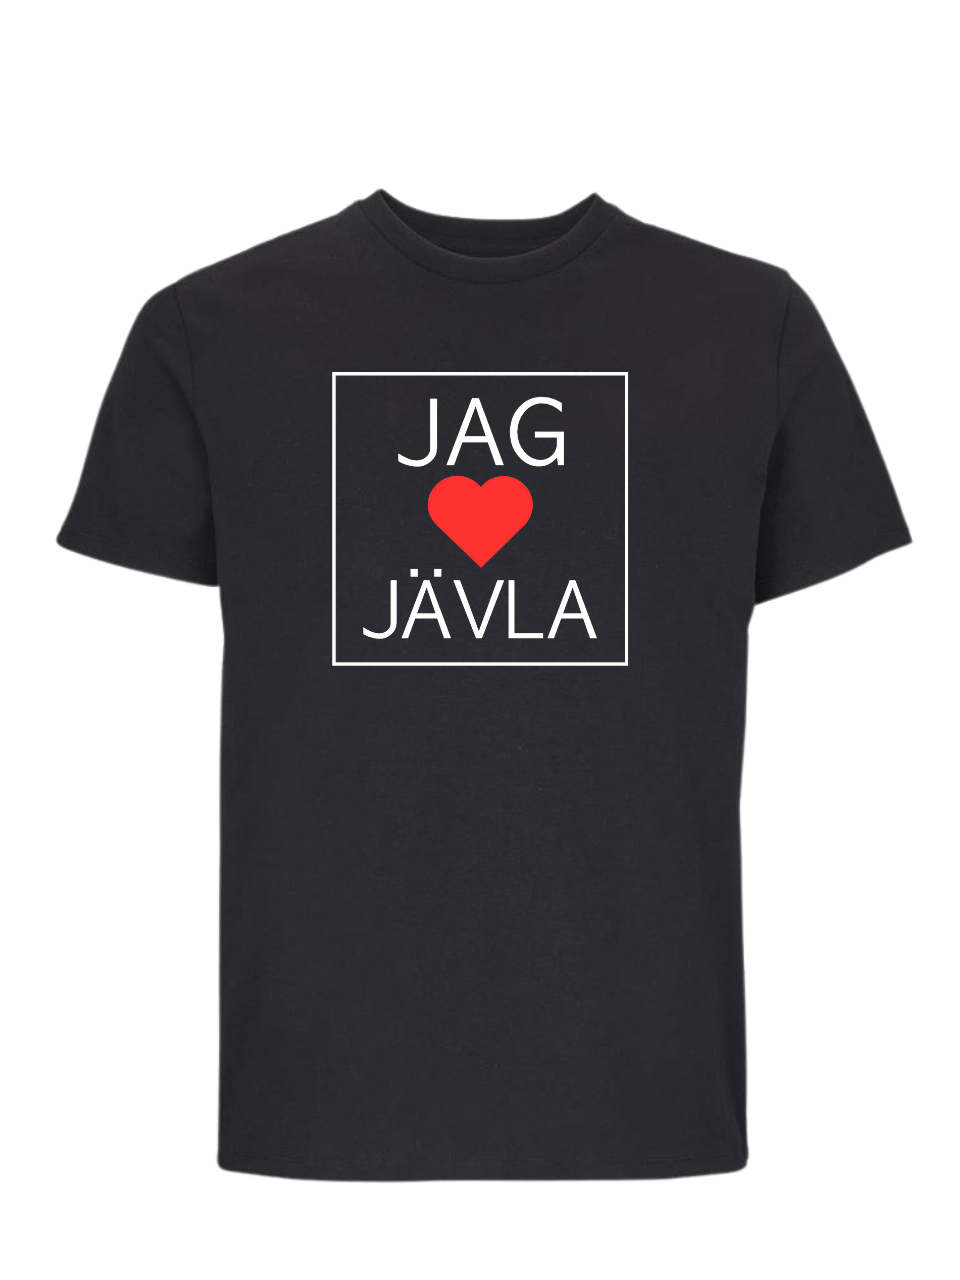 JAG SYDÄN JÄVLA - T-paita - Tilaa viimeistään 8.2. klo 12:00 mennessä ehtiäksesi Ystävänpäivään